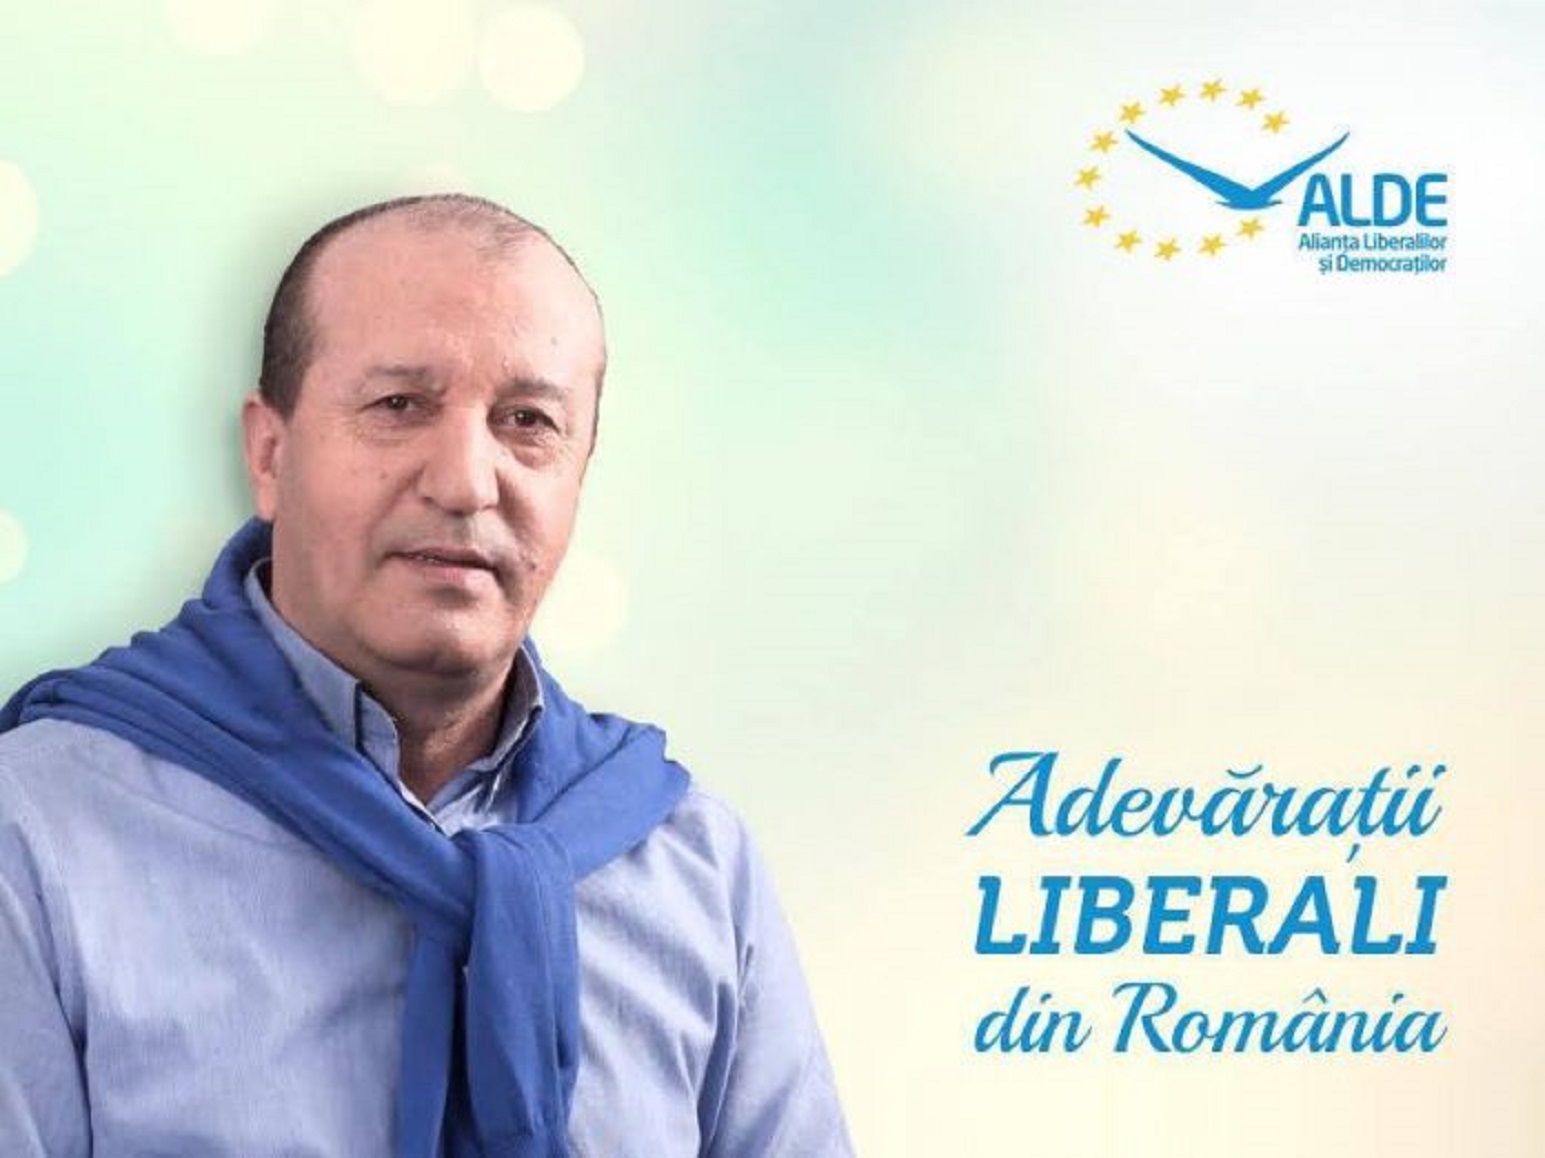 Primarul din localitatea Chiajna, Mircea Minea, a fost diagnosticat cu cancer in faza terminala